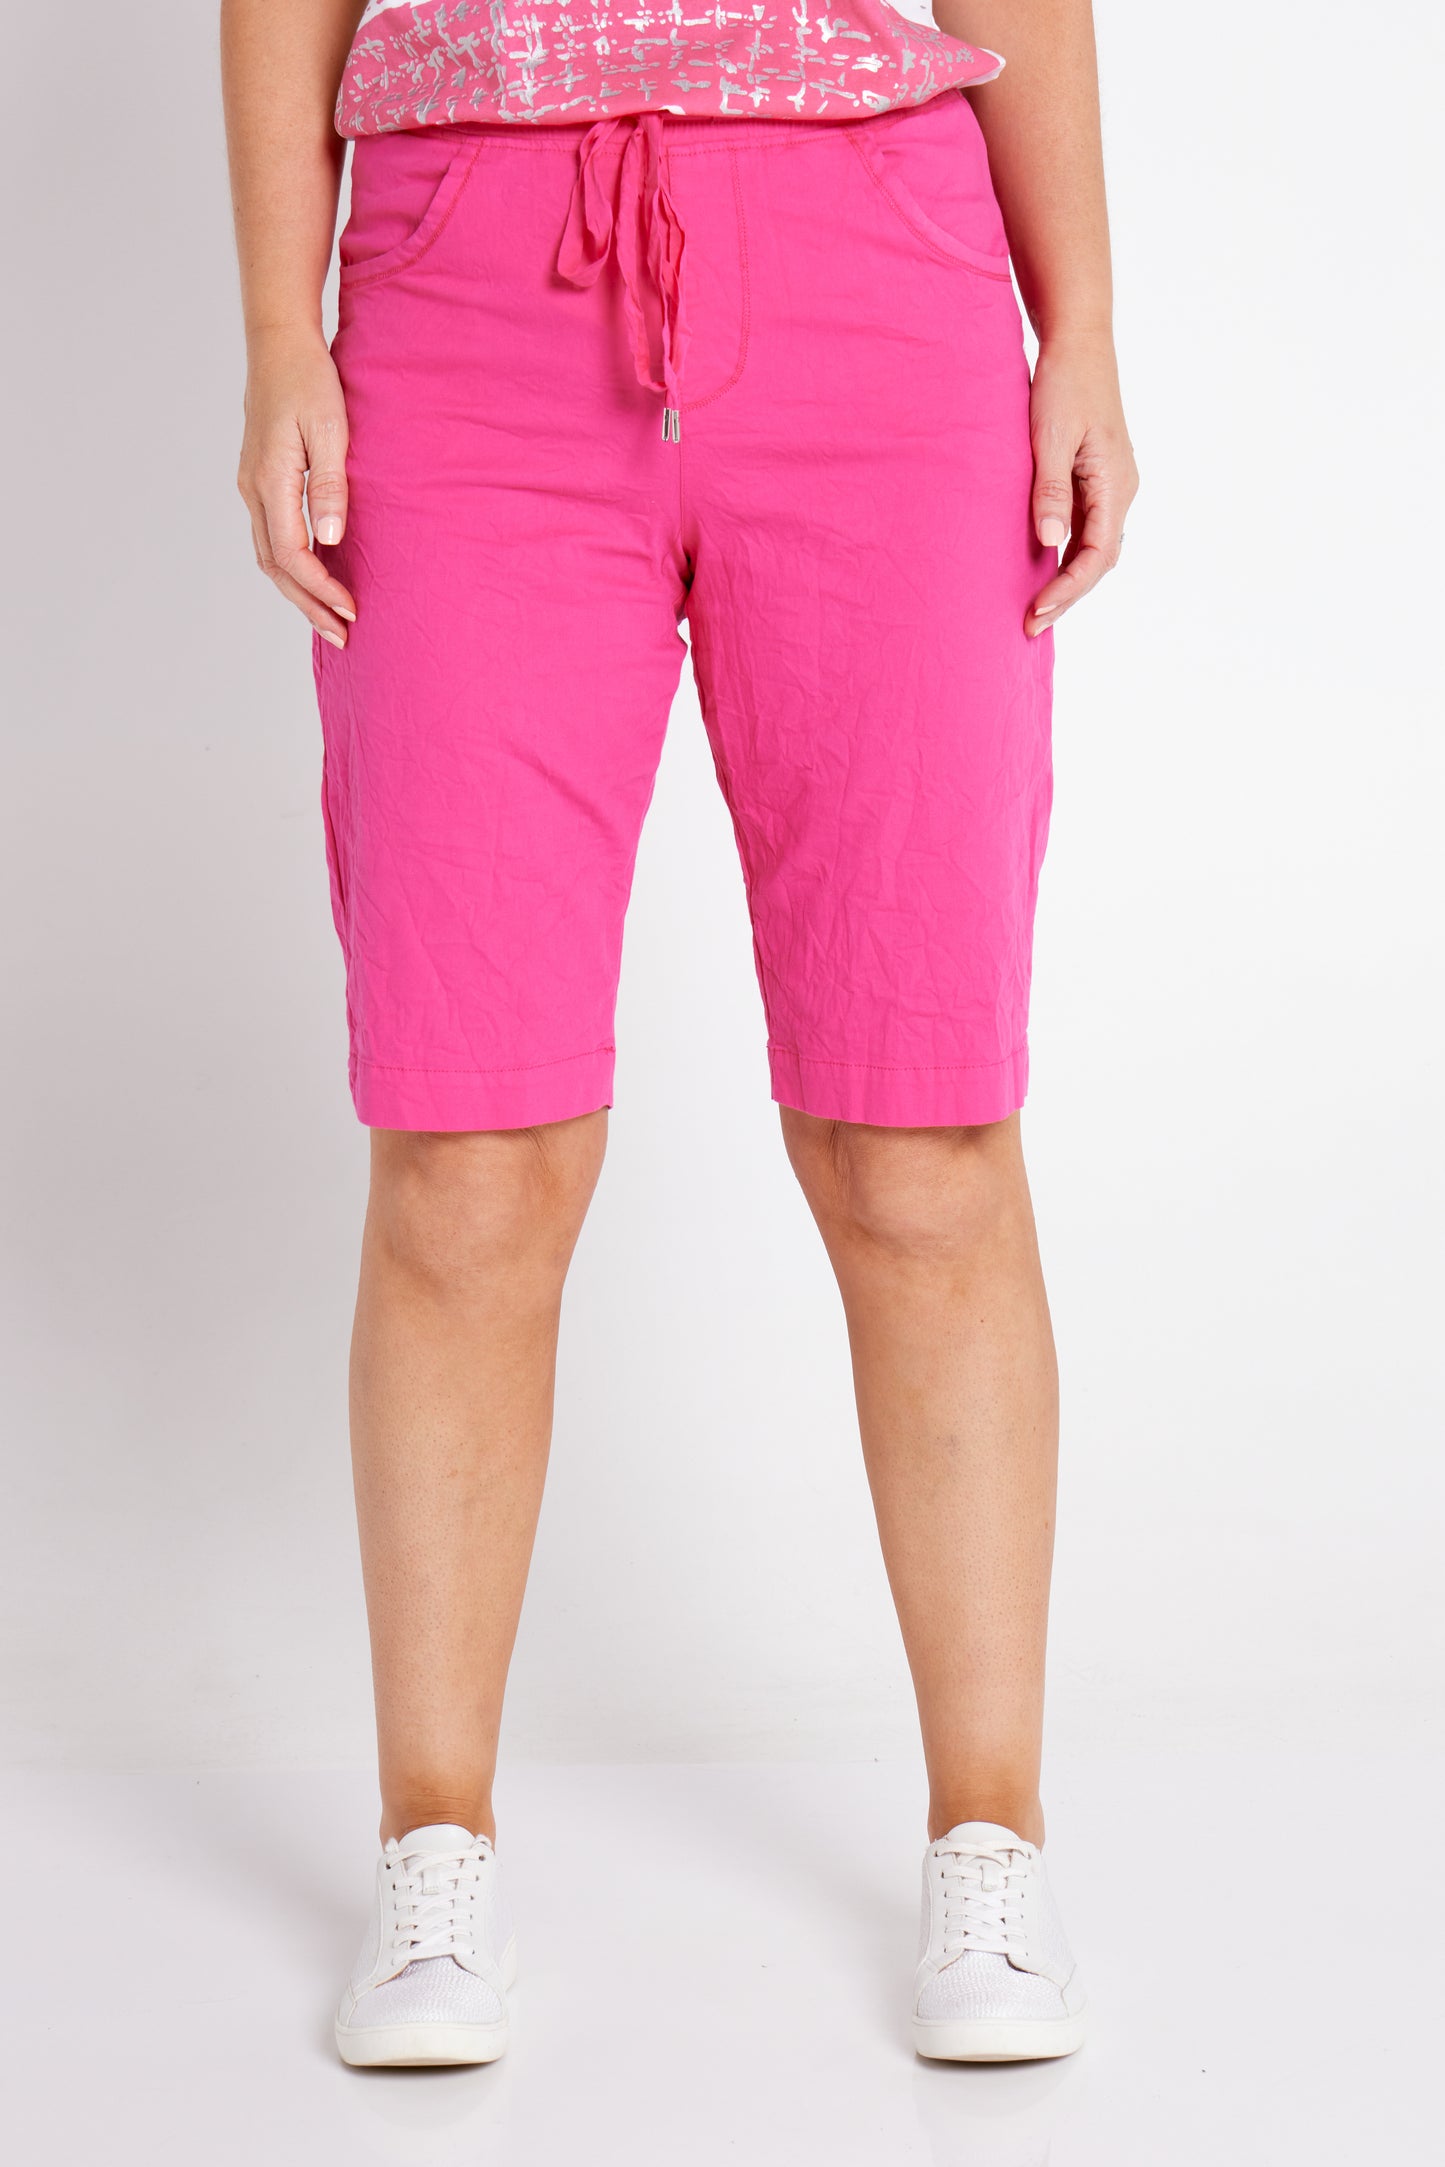 Hasting Bermuda Shorts - Hot Pink